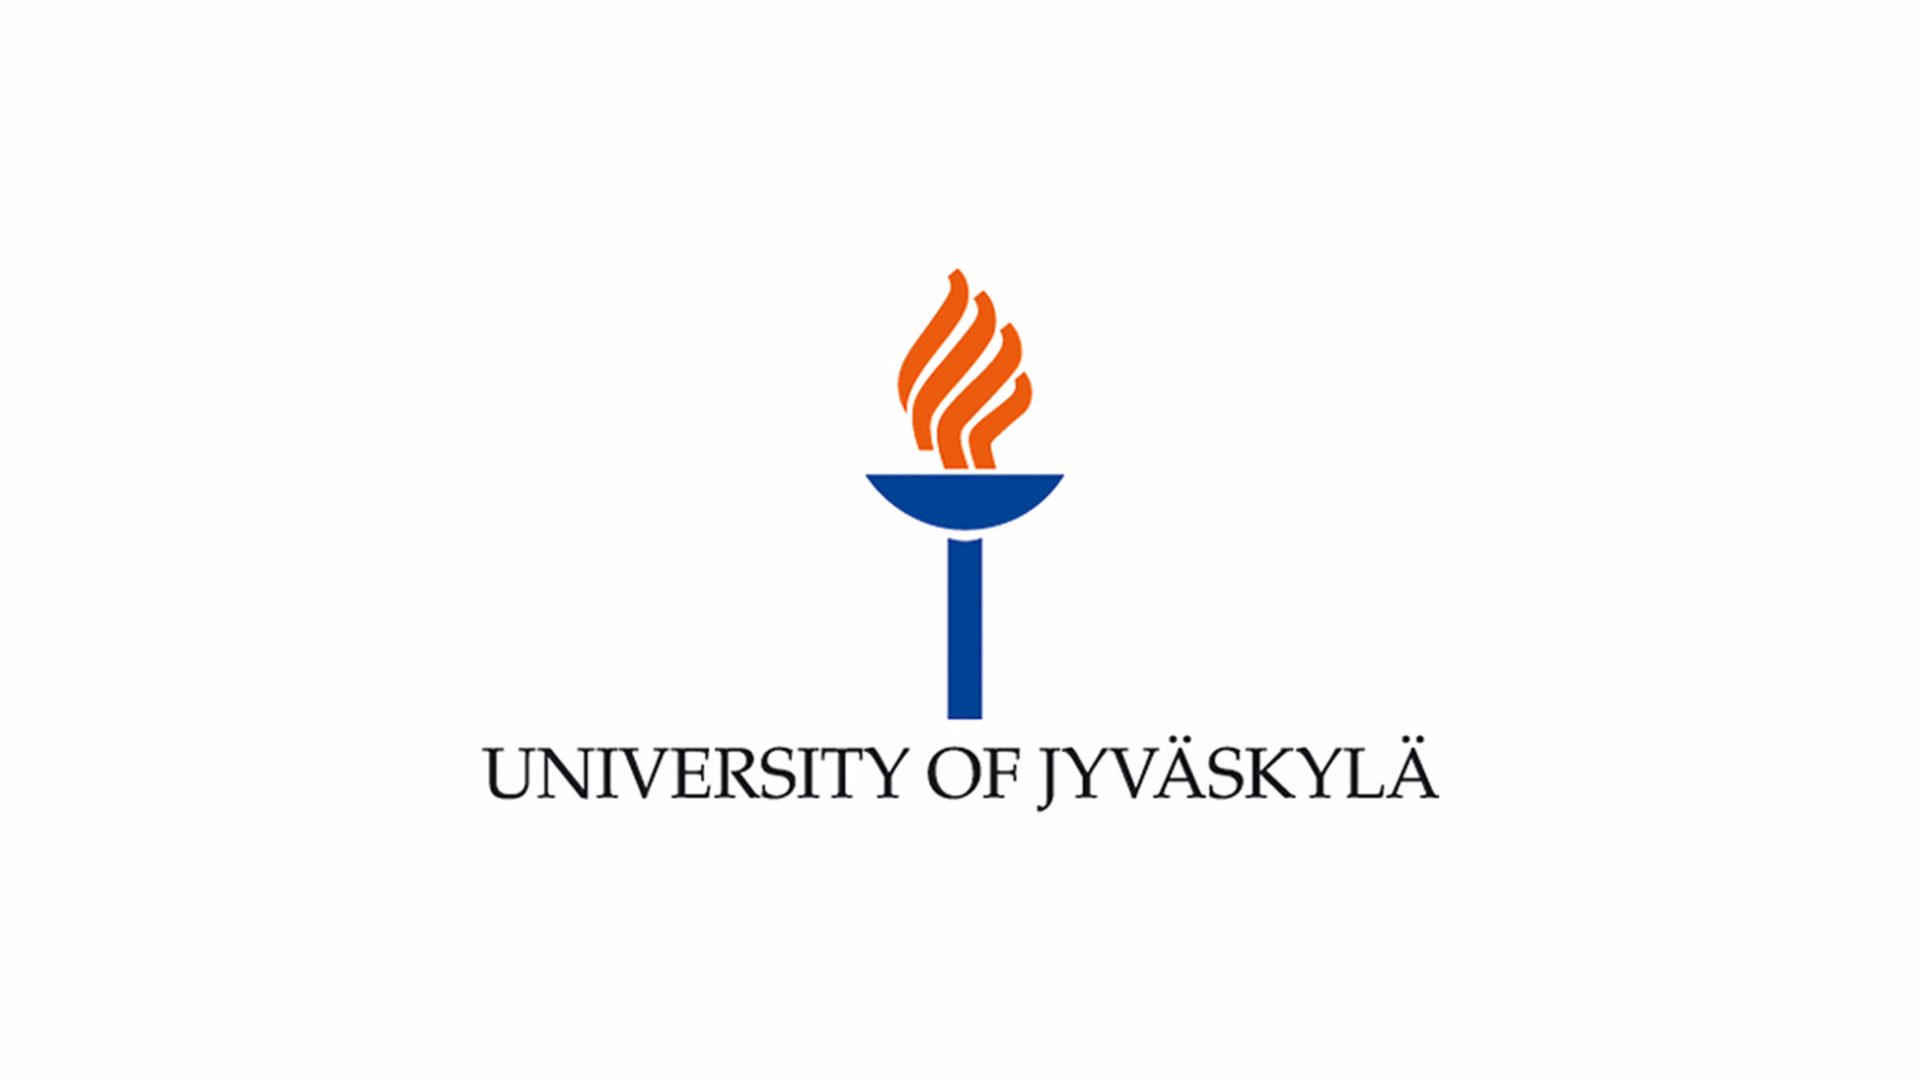 Вакансия Доцента политологии в Университете Йювяскюля, Финляндия